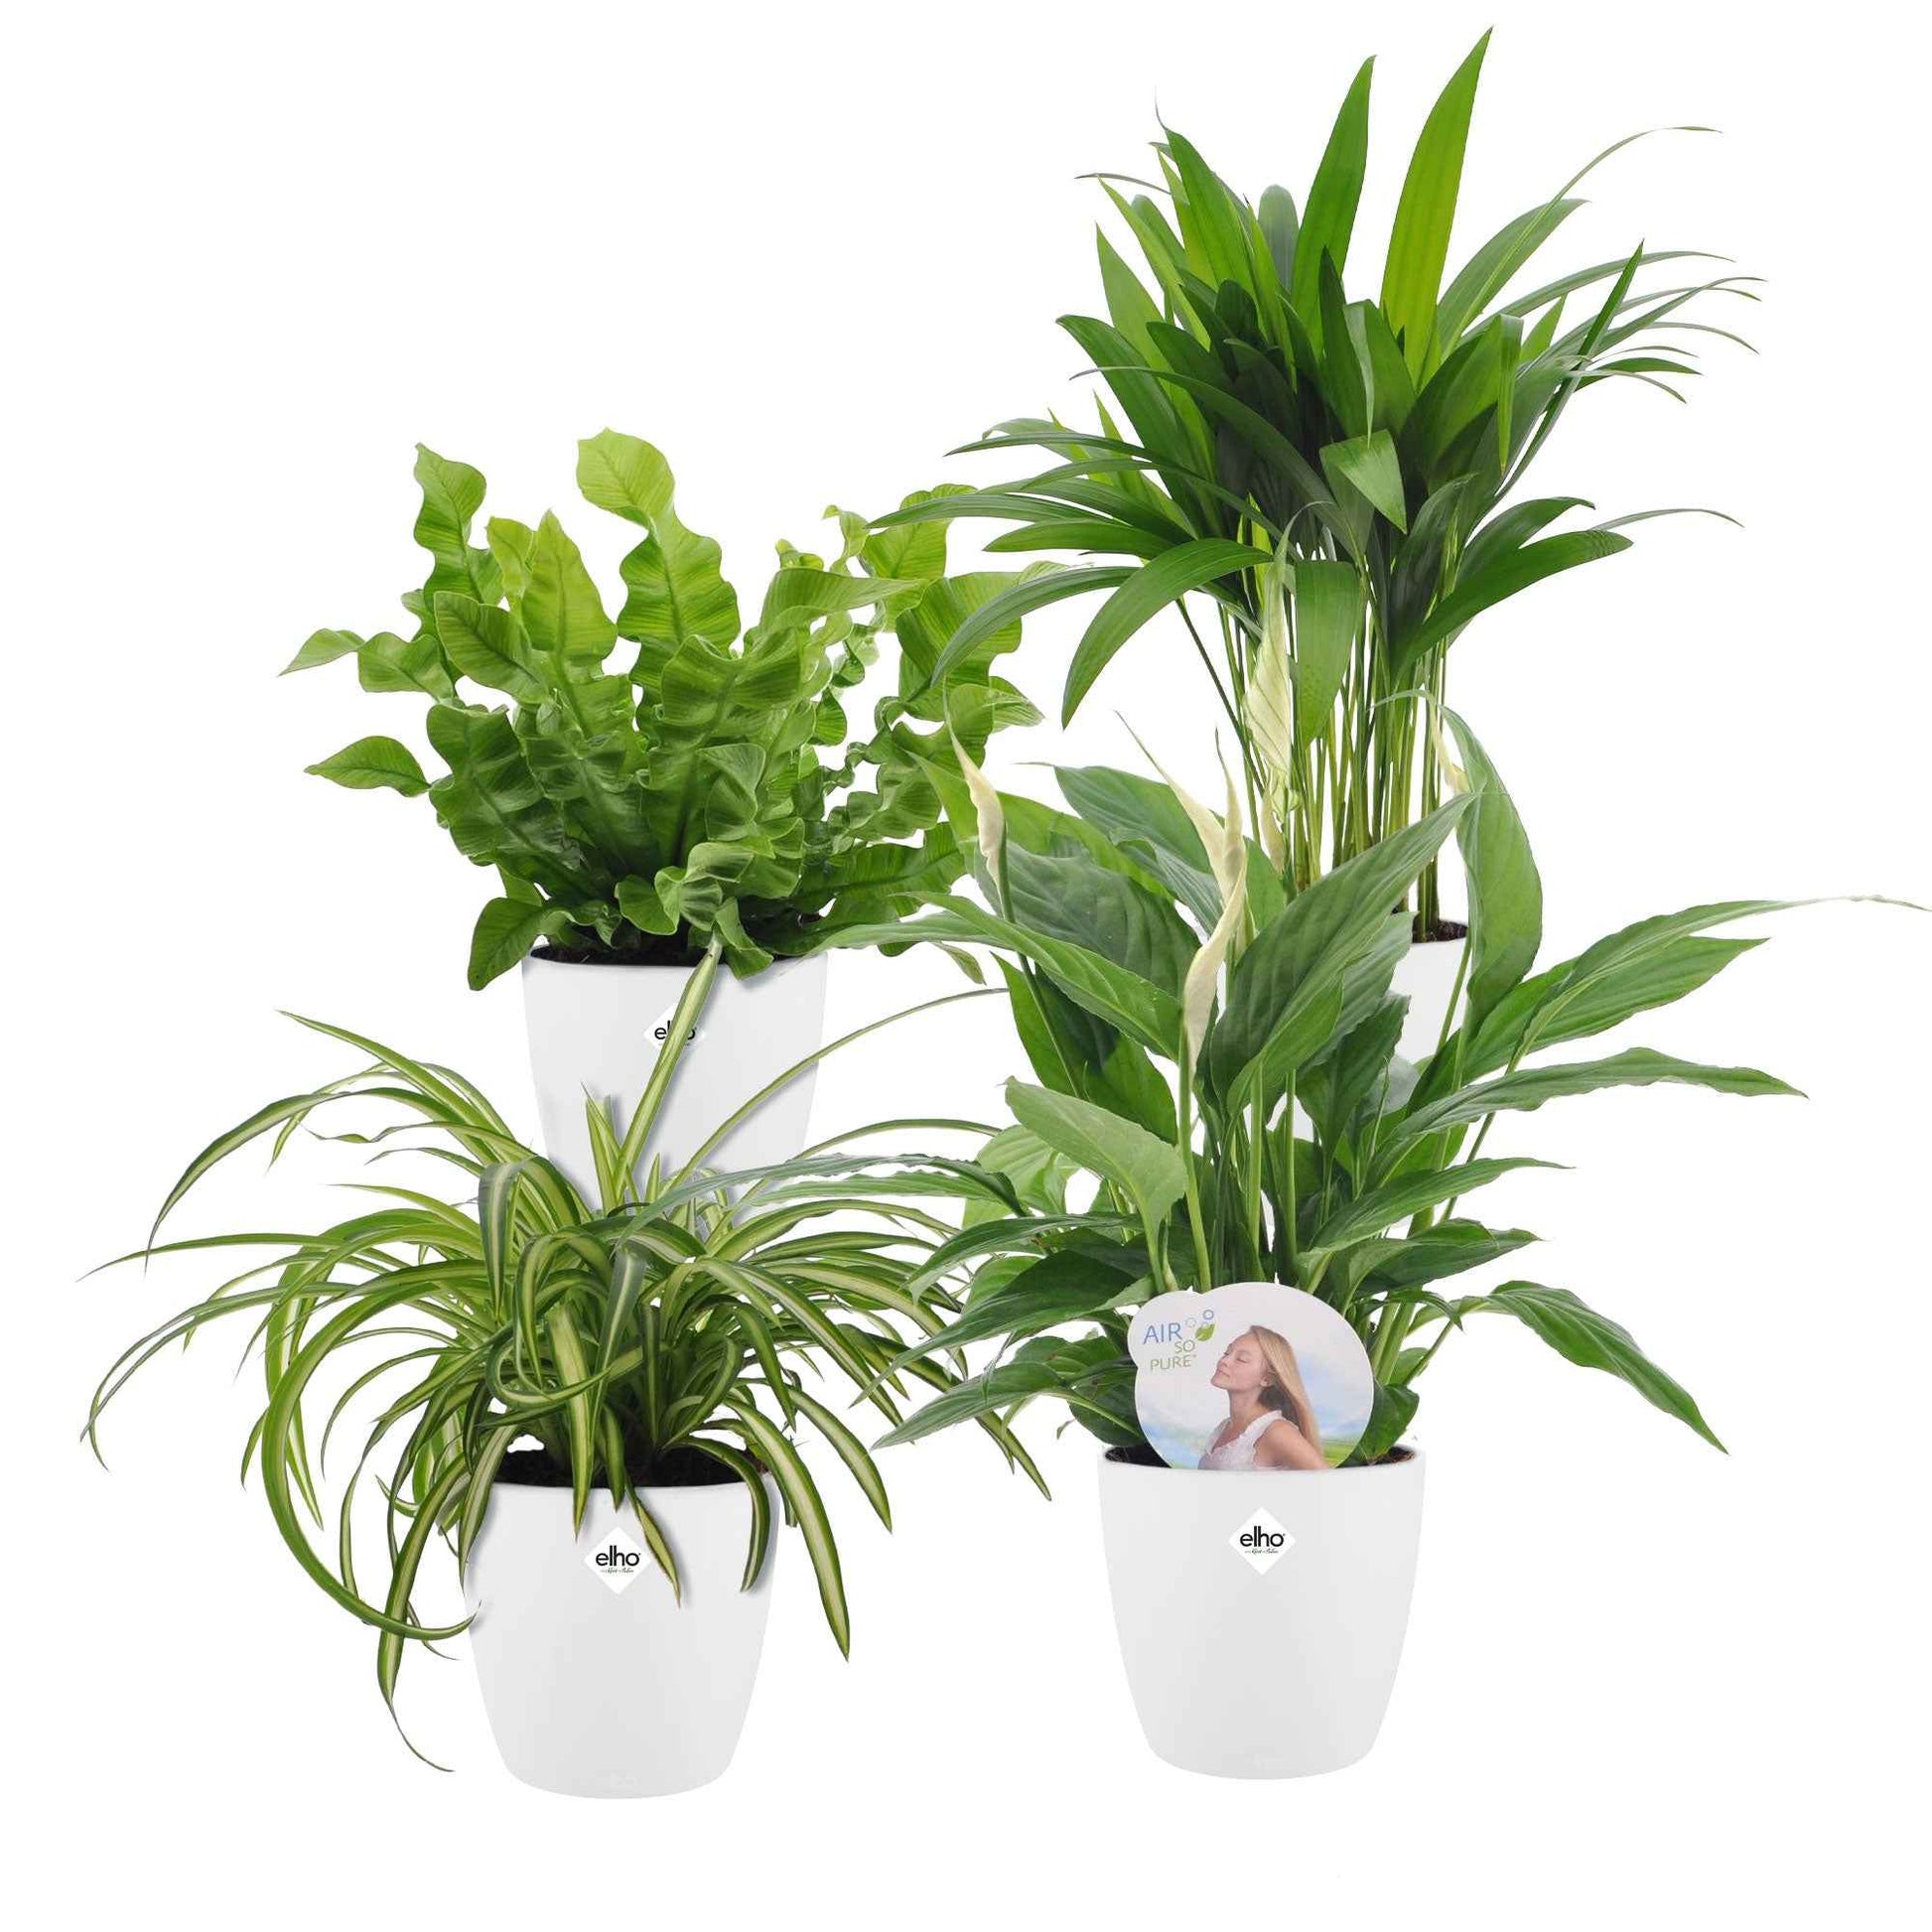 Luftreinigende Pflanzen Mischung inkl. Ziertöpfe, weiß (x4) - Dypsis, Chlorophytum, Asplenium, Spathiphyllum - Nach Sorten